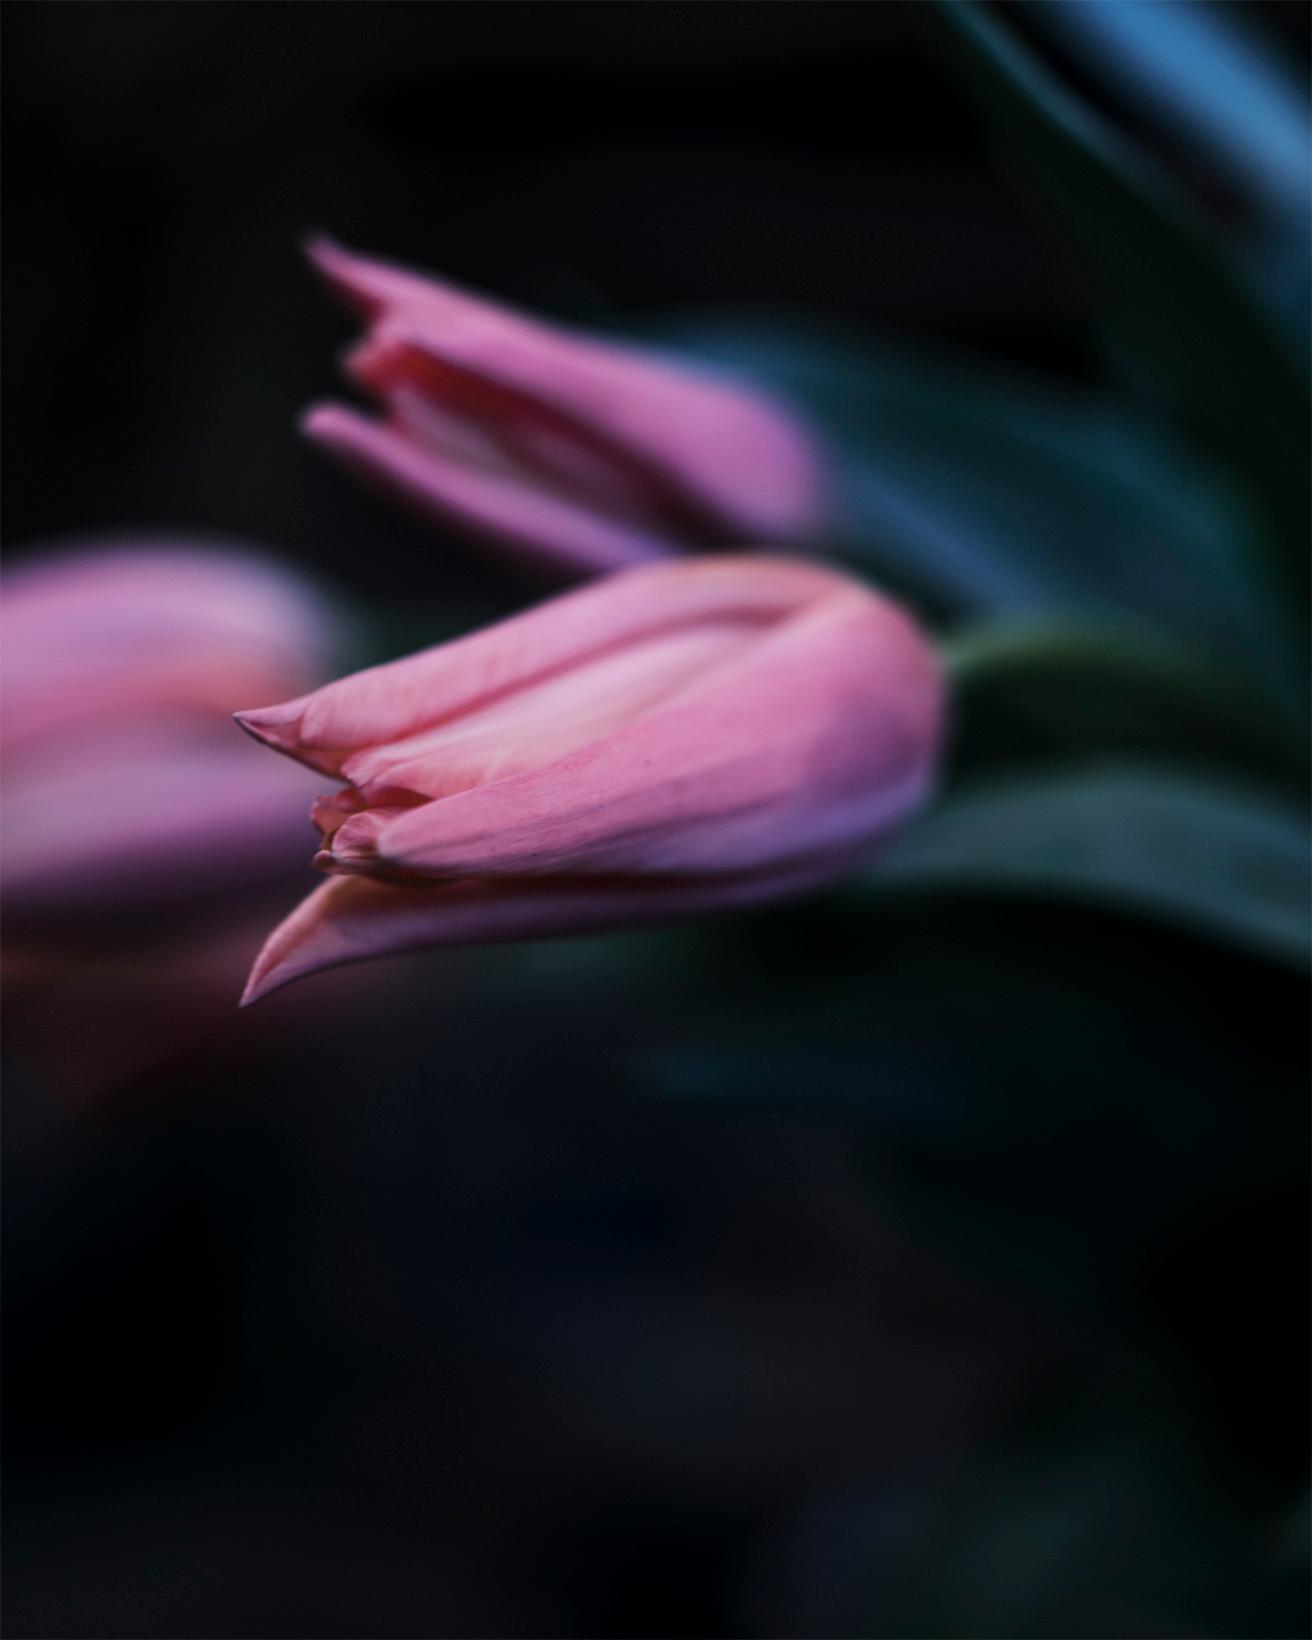 百合咲きと呼ばれる花びらの先が尖ったチューリップ。蕾のときには鋭い横顔を見せるが、パカッと反り返って咲く。